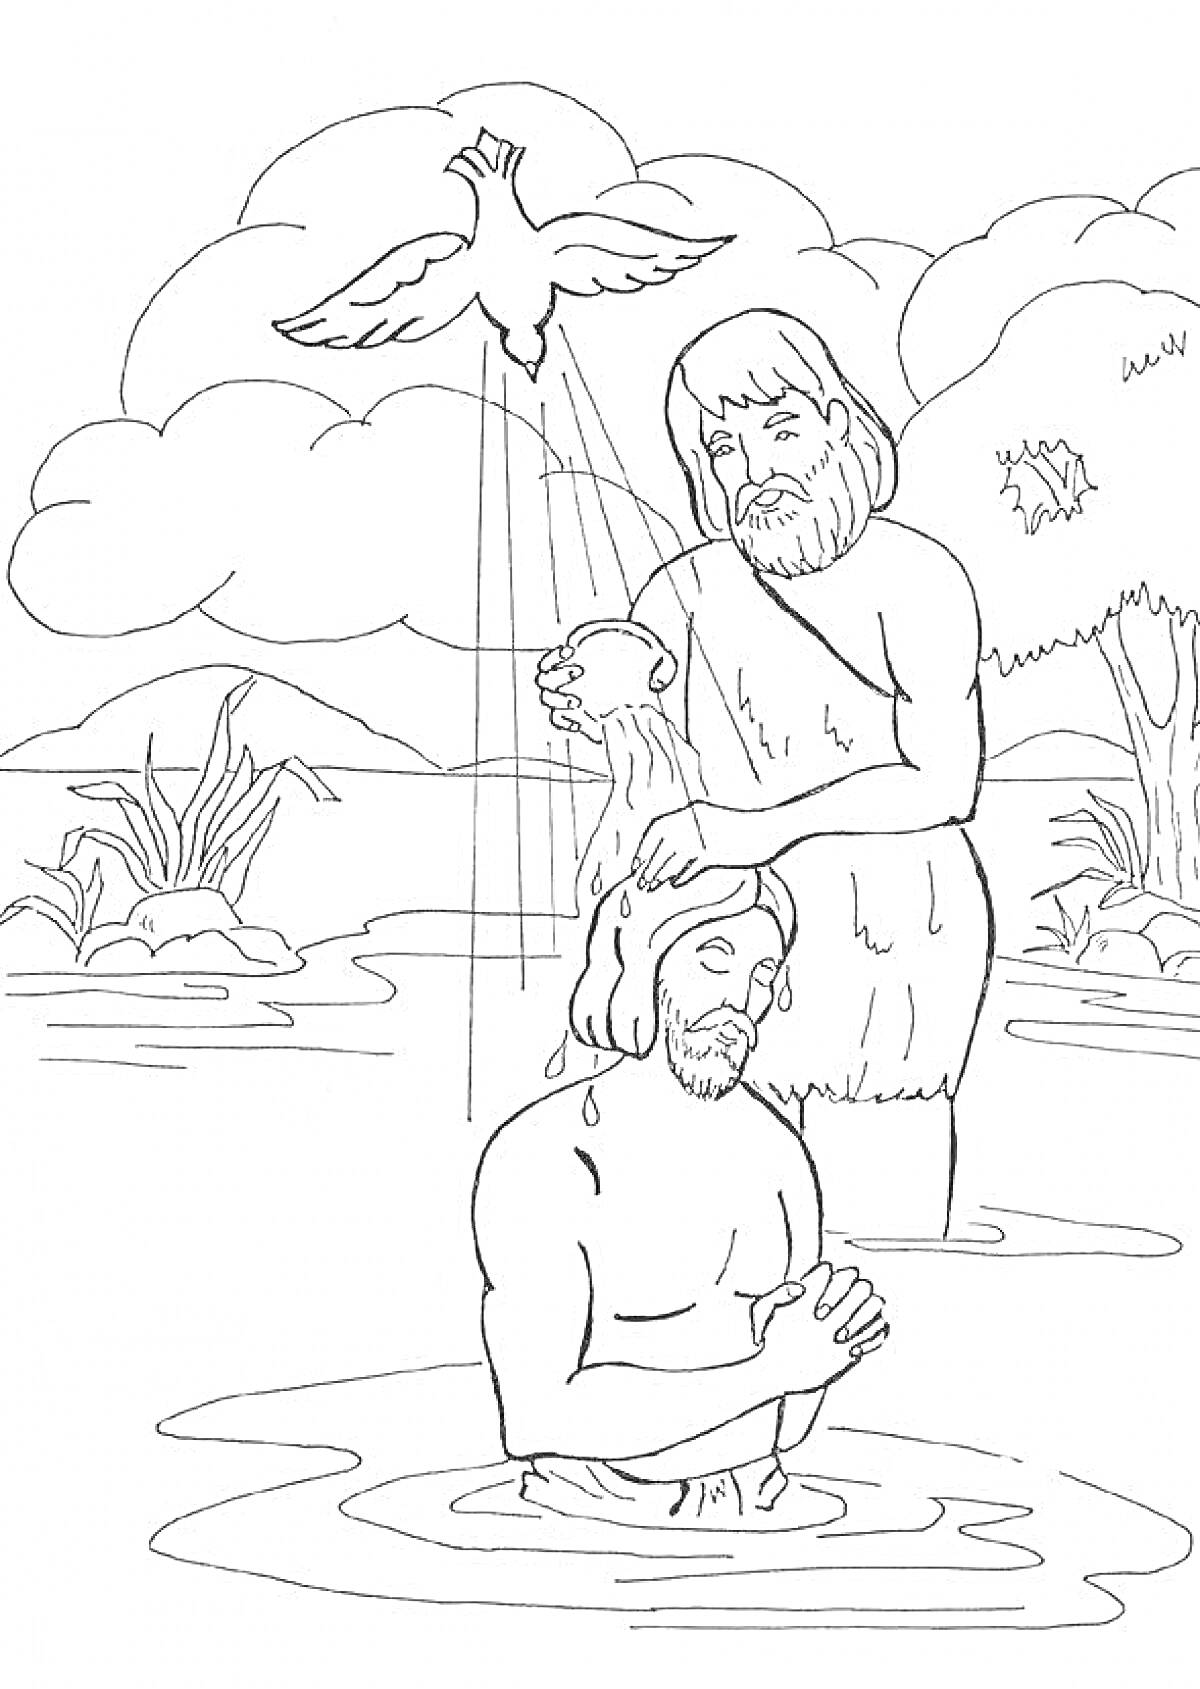 Раскраска Крещение в реке, Иисус и Иоанн Креститель, голубь, вода, деревья и кусты на заднем плане